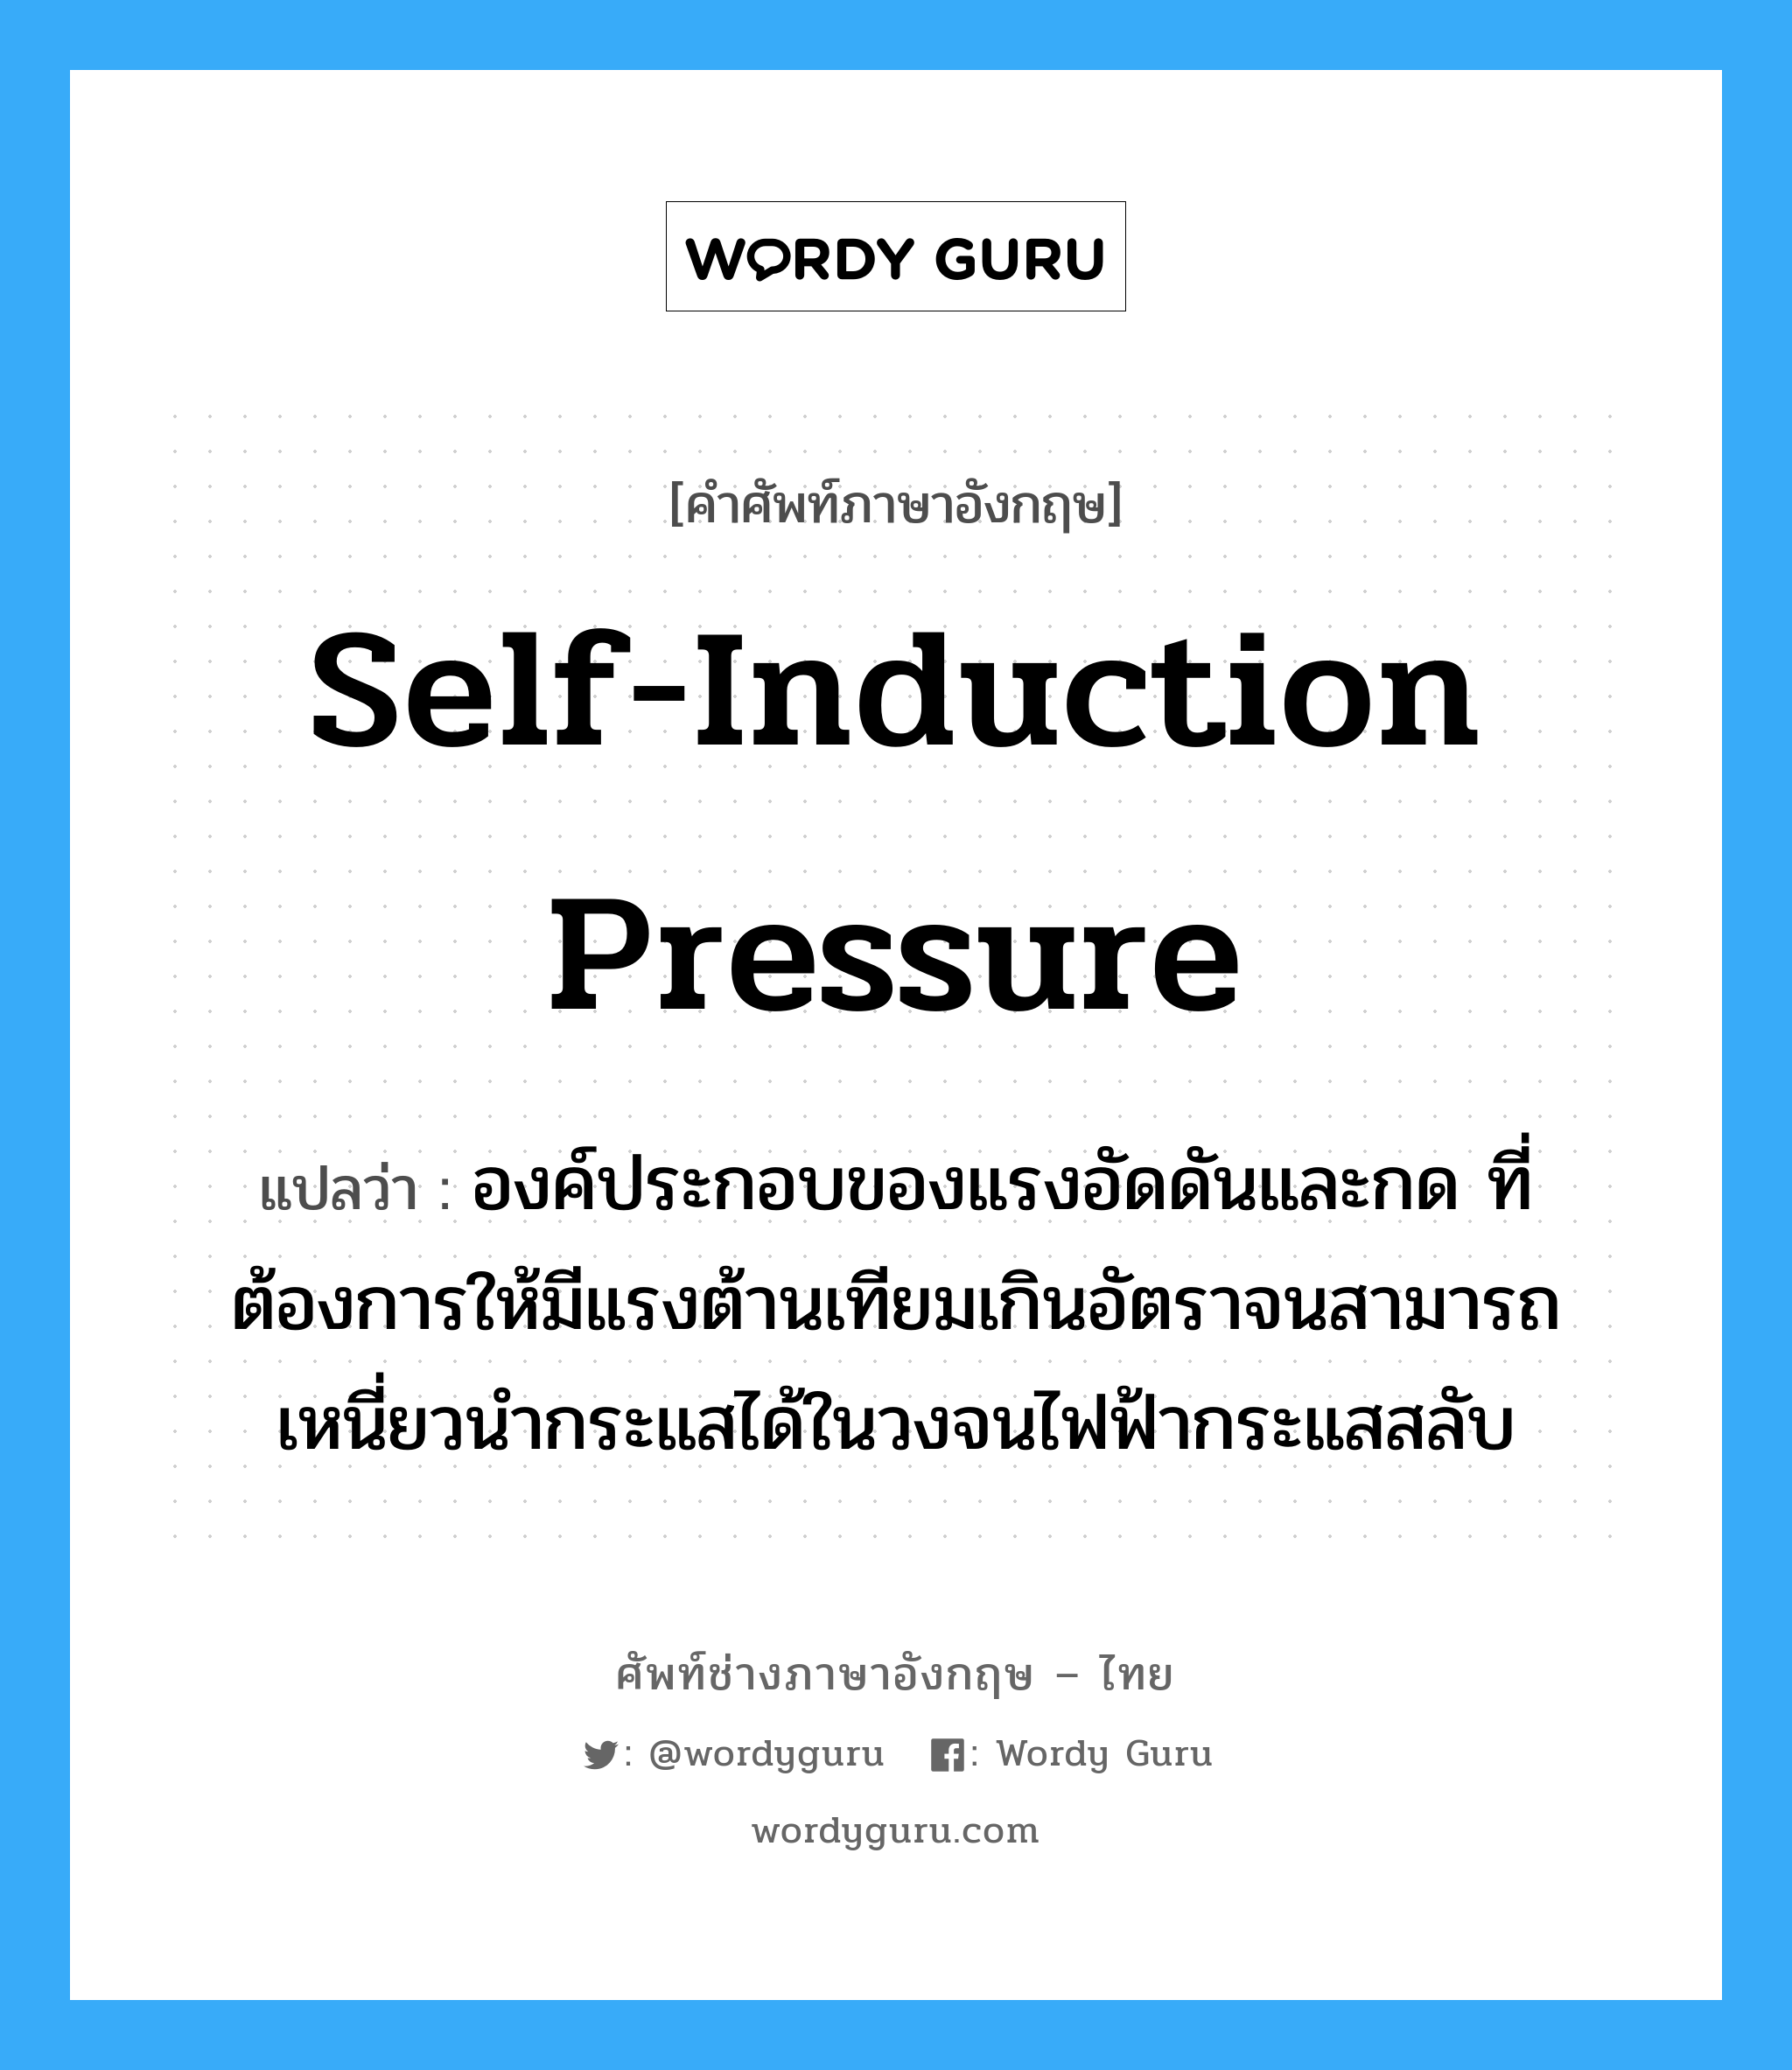 self-induction pressure แปลว่า?, คำศัพท์ช่างภาษาอังกฤษ - ไทย self-induction pressure คำศัพท์ภาษาอังกฤษ self-induction pressure แปลว่า องค์ประกอบของแรงอัดดันและกด ที่ต้องการให้มีแรงต้านเทียมเกินอัตราจนสามารถเหนี่ยวนำกระแสได้ในวงจนไฟฟ้ากระแสสลับ